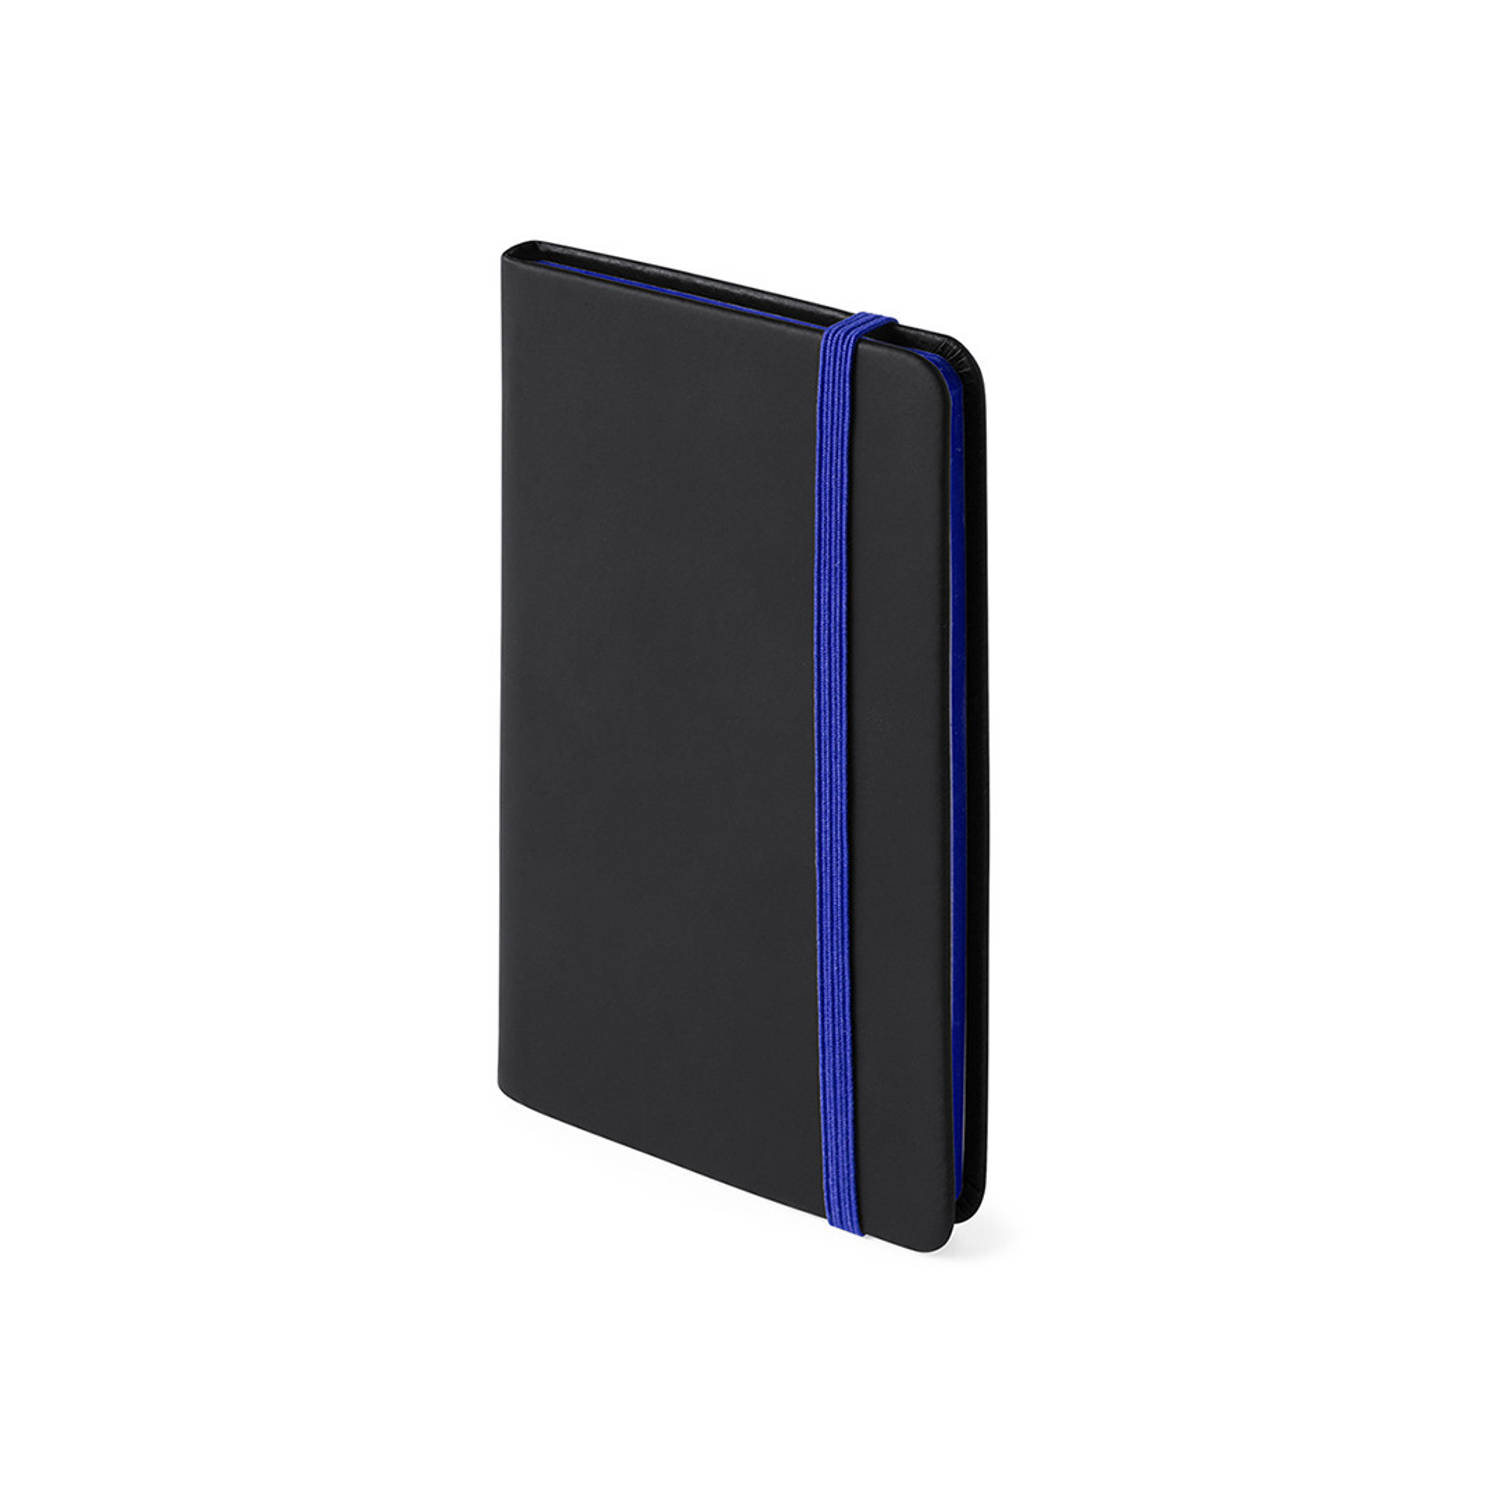 Notitieboekje met blauw elastiek pu-leer kaft 9 x 14 cm - Notitieboek